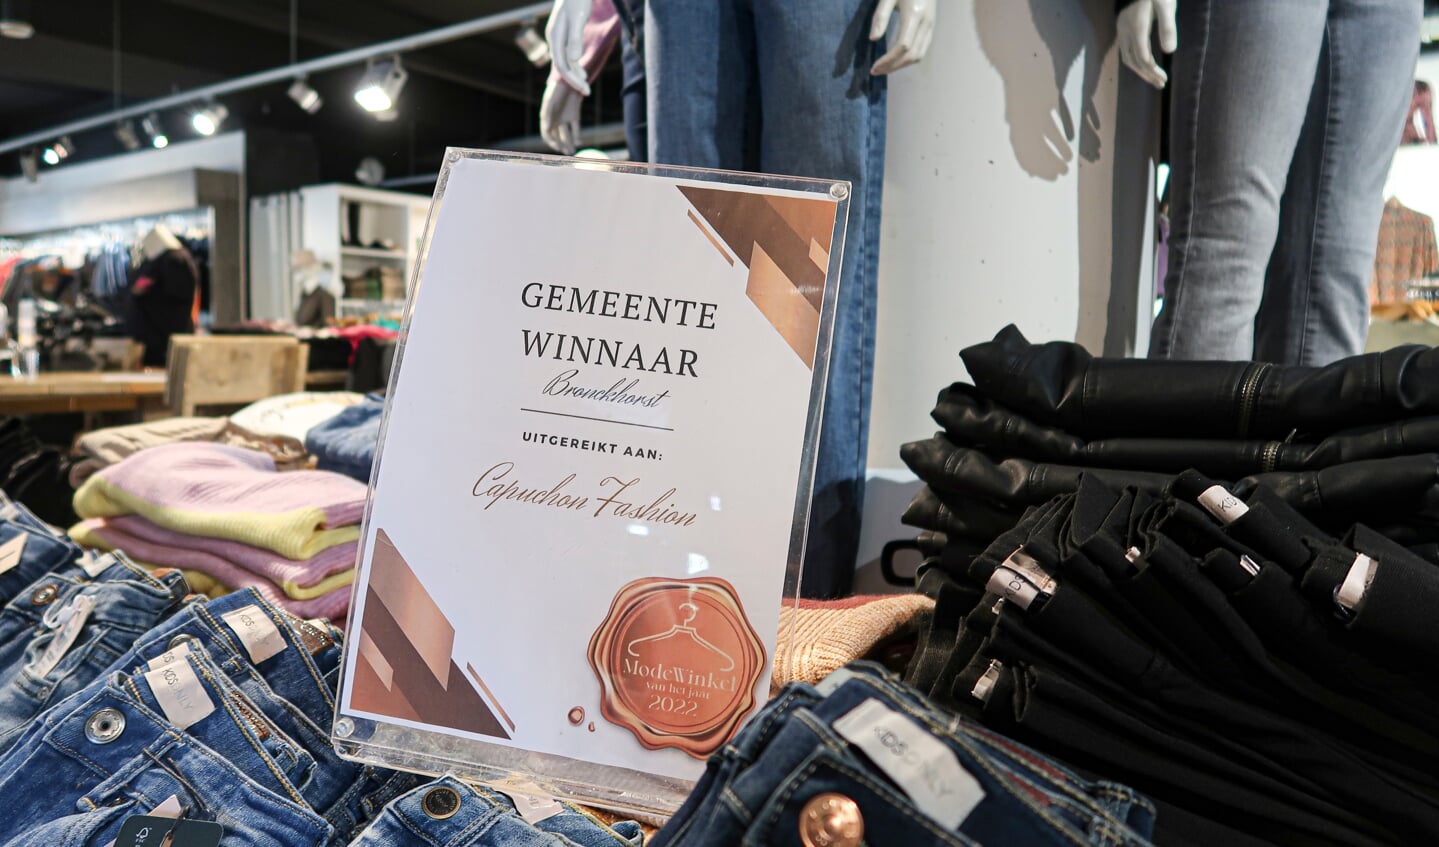 Modezaak Capuchon Fashion is gemeentewinnaar geworden in de verkiezing ‘Modewinkel van het Jaar 2022’. Foto: Luuk Stam